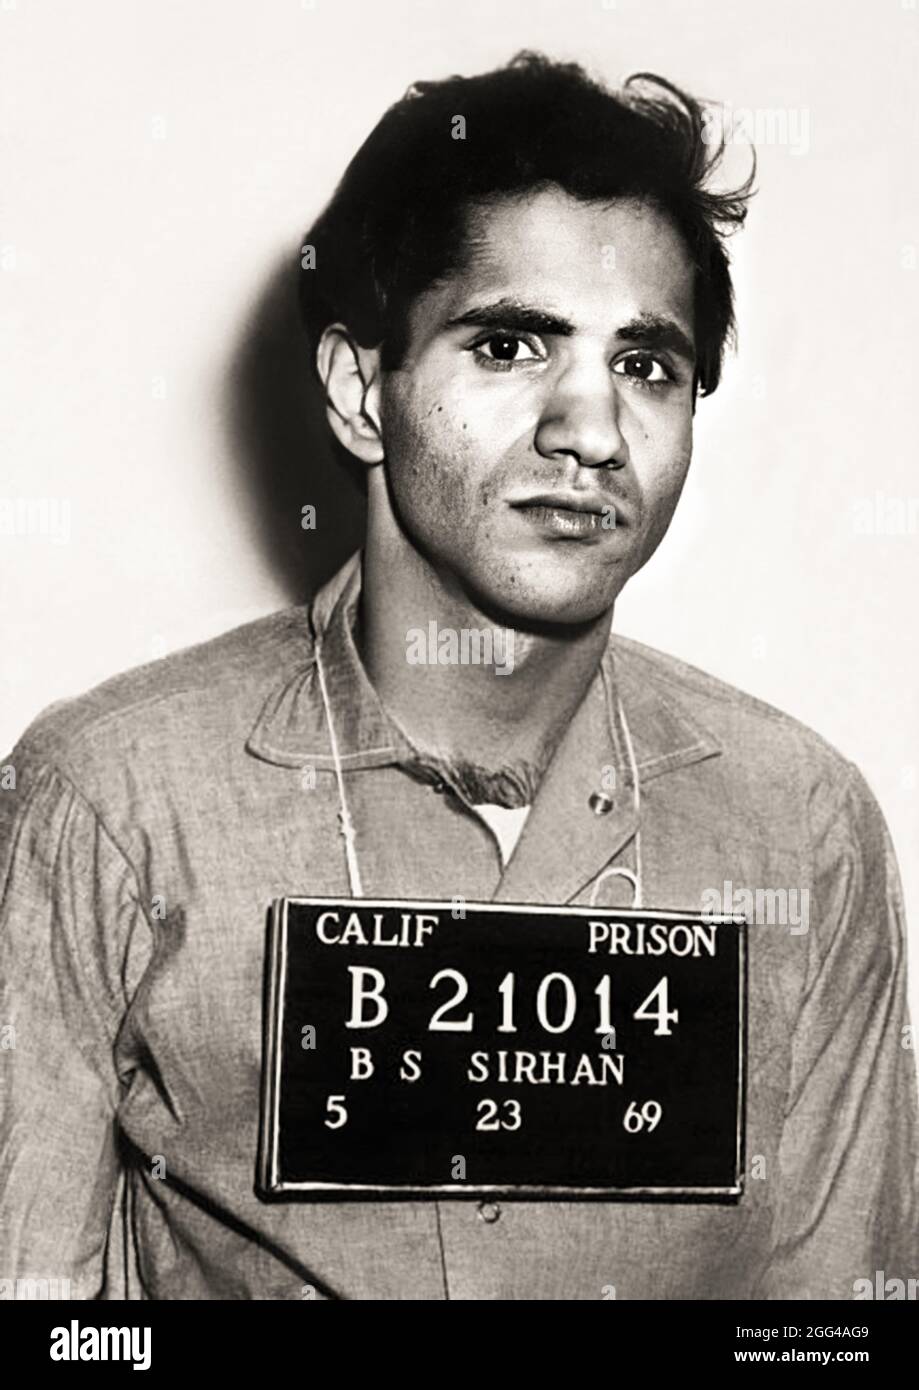 1969 , 23 may , CALIFORNIA , USA : The Palestinian born Jordanian citizen SIRHAN SIRHAN ( Sirhan Bishara Sirhan , born in 1944 ), Police Department mug shot at San Quentin State Prison, the killer who murdered the Senator ROBERT KENNEDY the day June 5, 1968 . - BOB - portrait - ritratto  - FOTO SEGNALETICA della POLIZIA  - MUG-SHOT - MUGSHOT - assassino - CRONACA NERA - KILLER - COMPLOT - COMPLOTTO - TERRORISTA - TERRORIST - ERGASTOLO - ERGASTOLANO - carcerato --- Archivio GBB Stock Photo